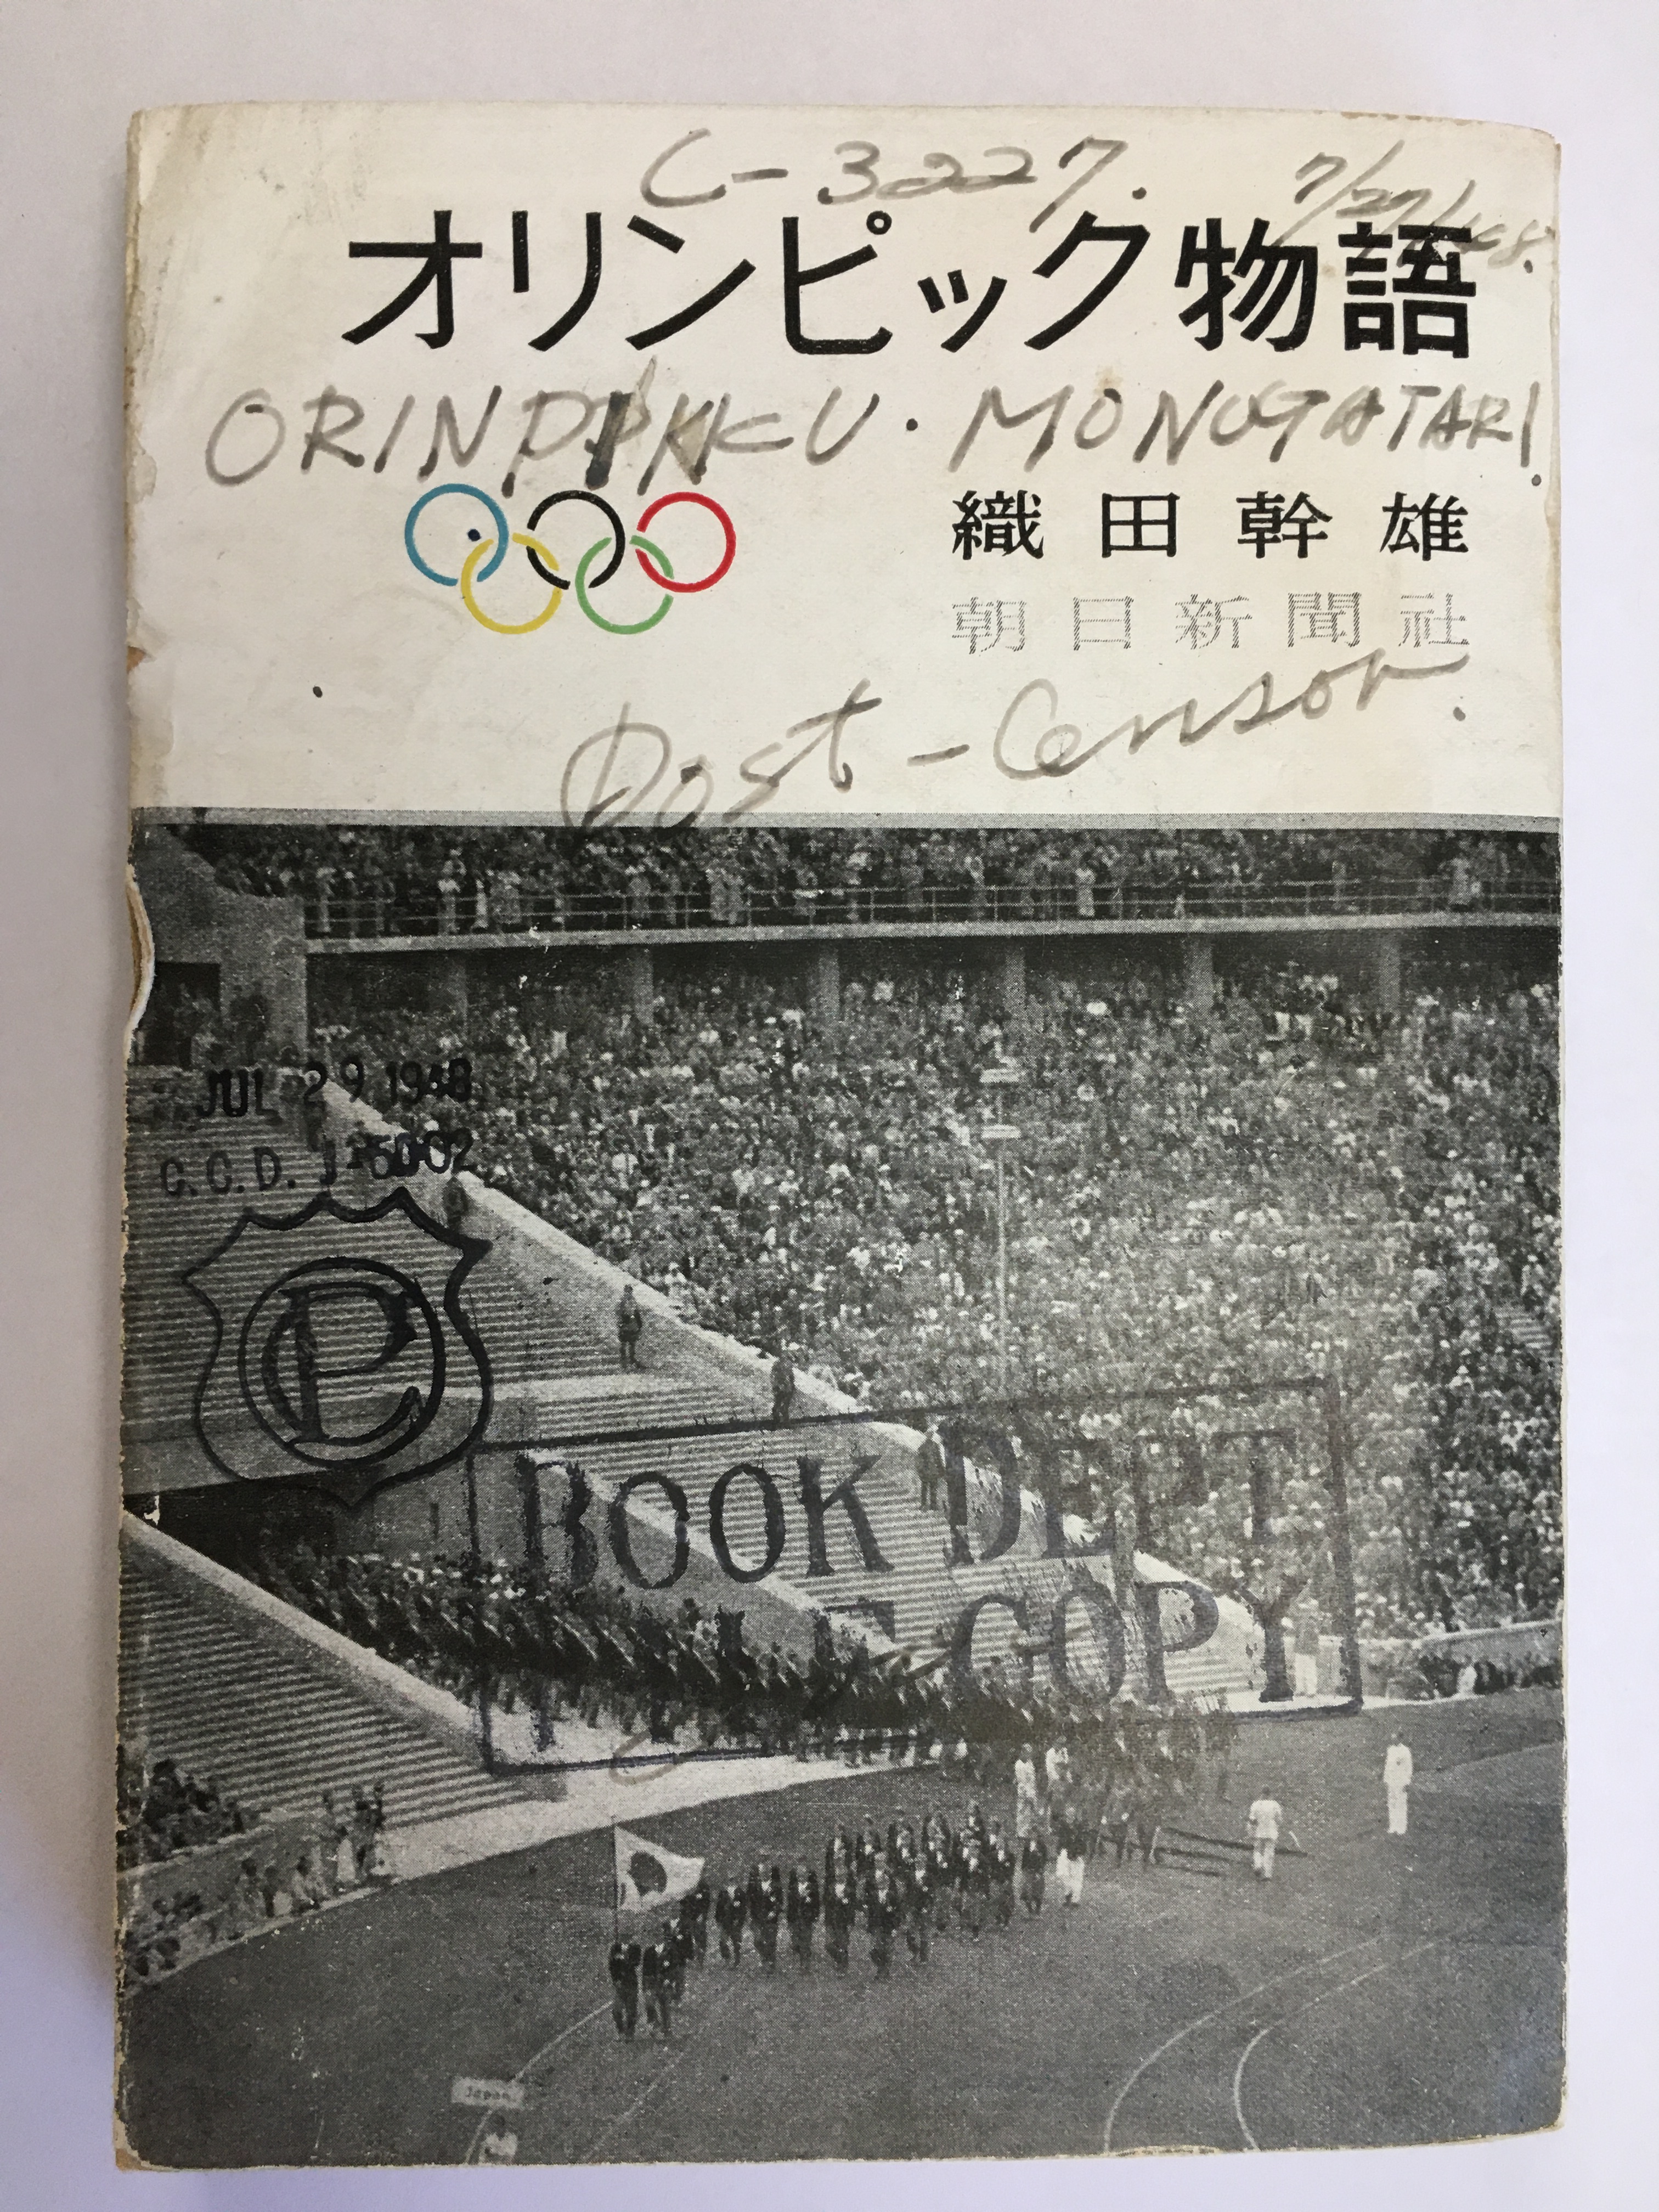 東京オリンピック特集シリーズ 第二回 織田幹雄 プランゲ文庫ブログ